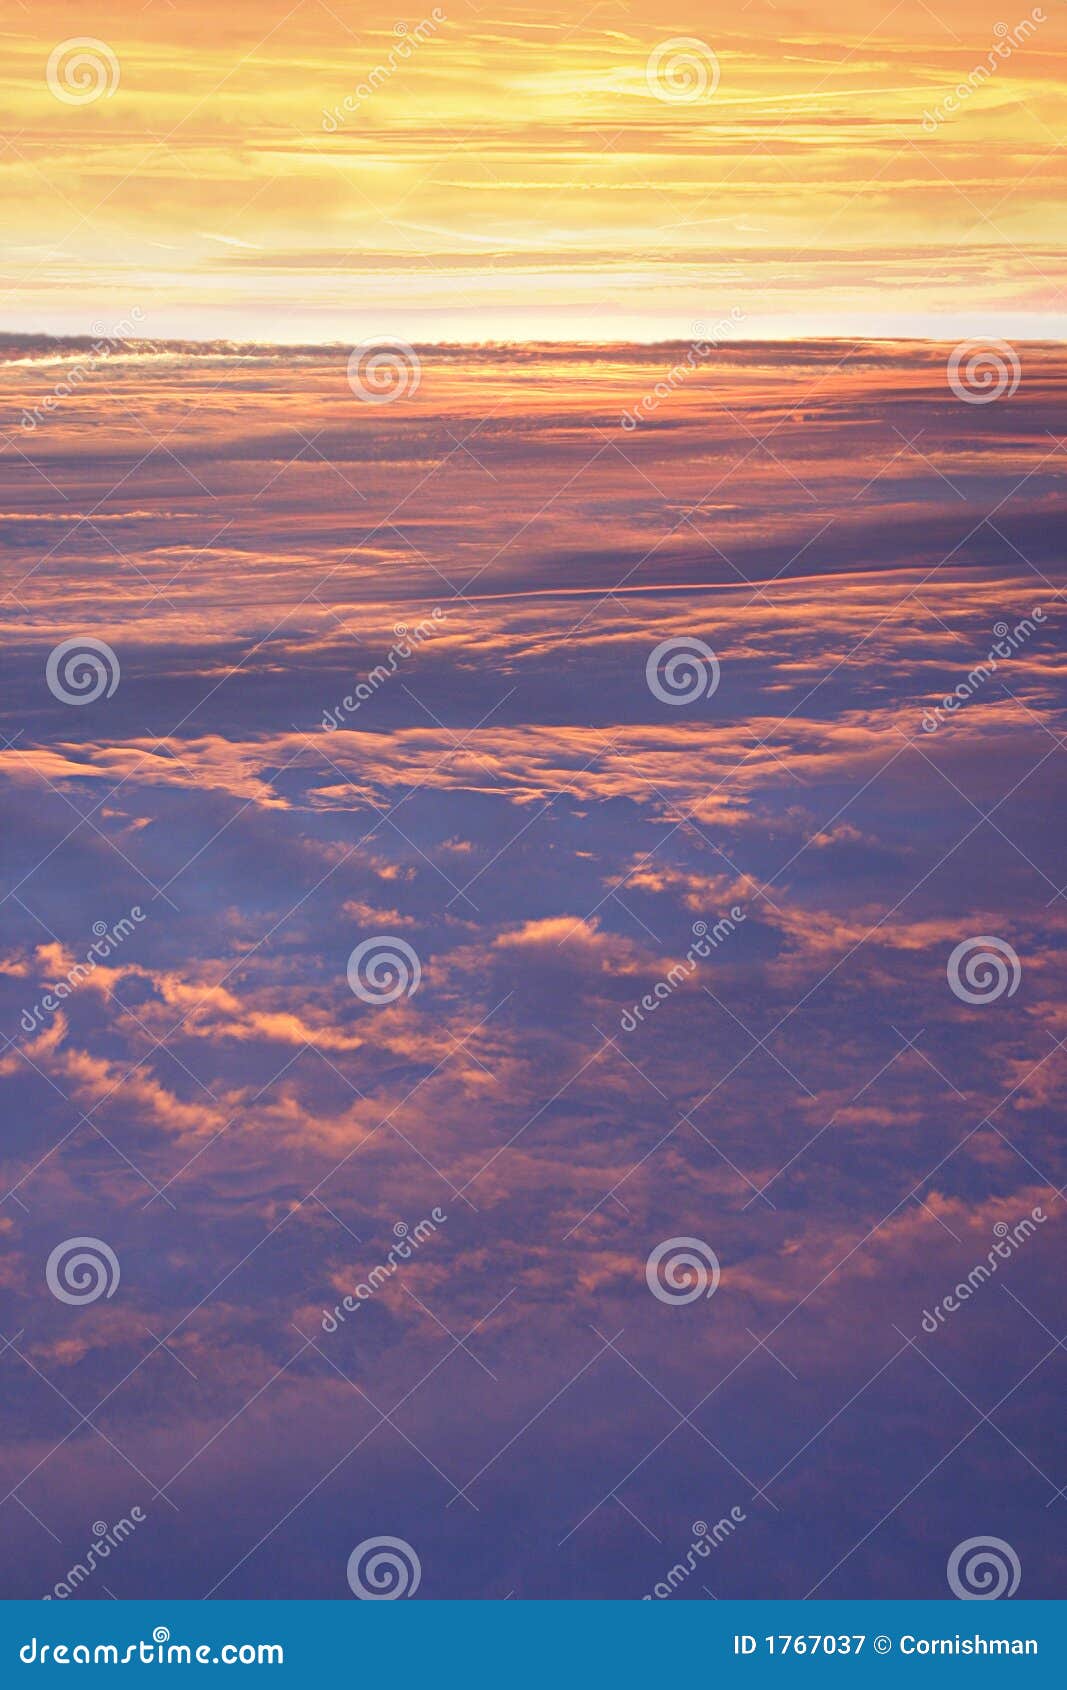 high altitude skyscape